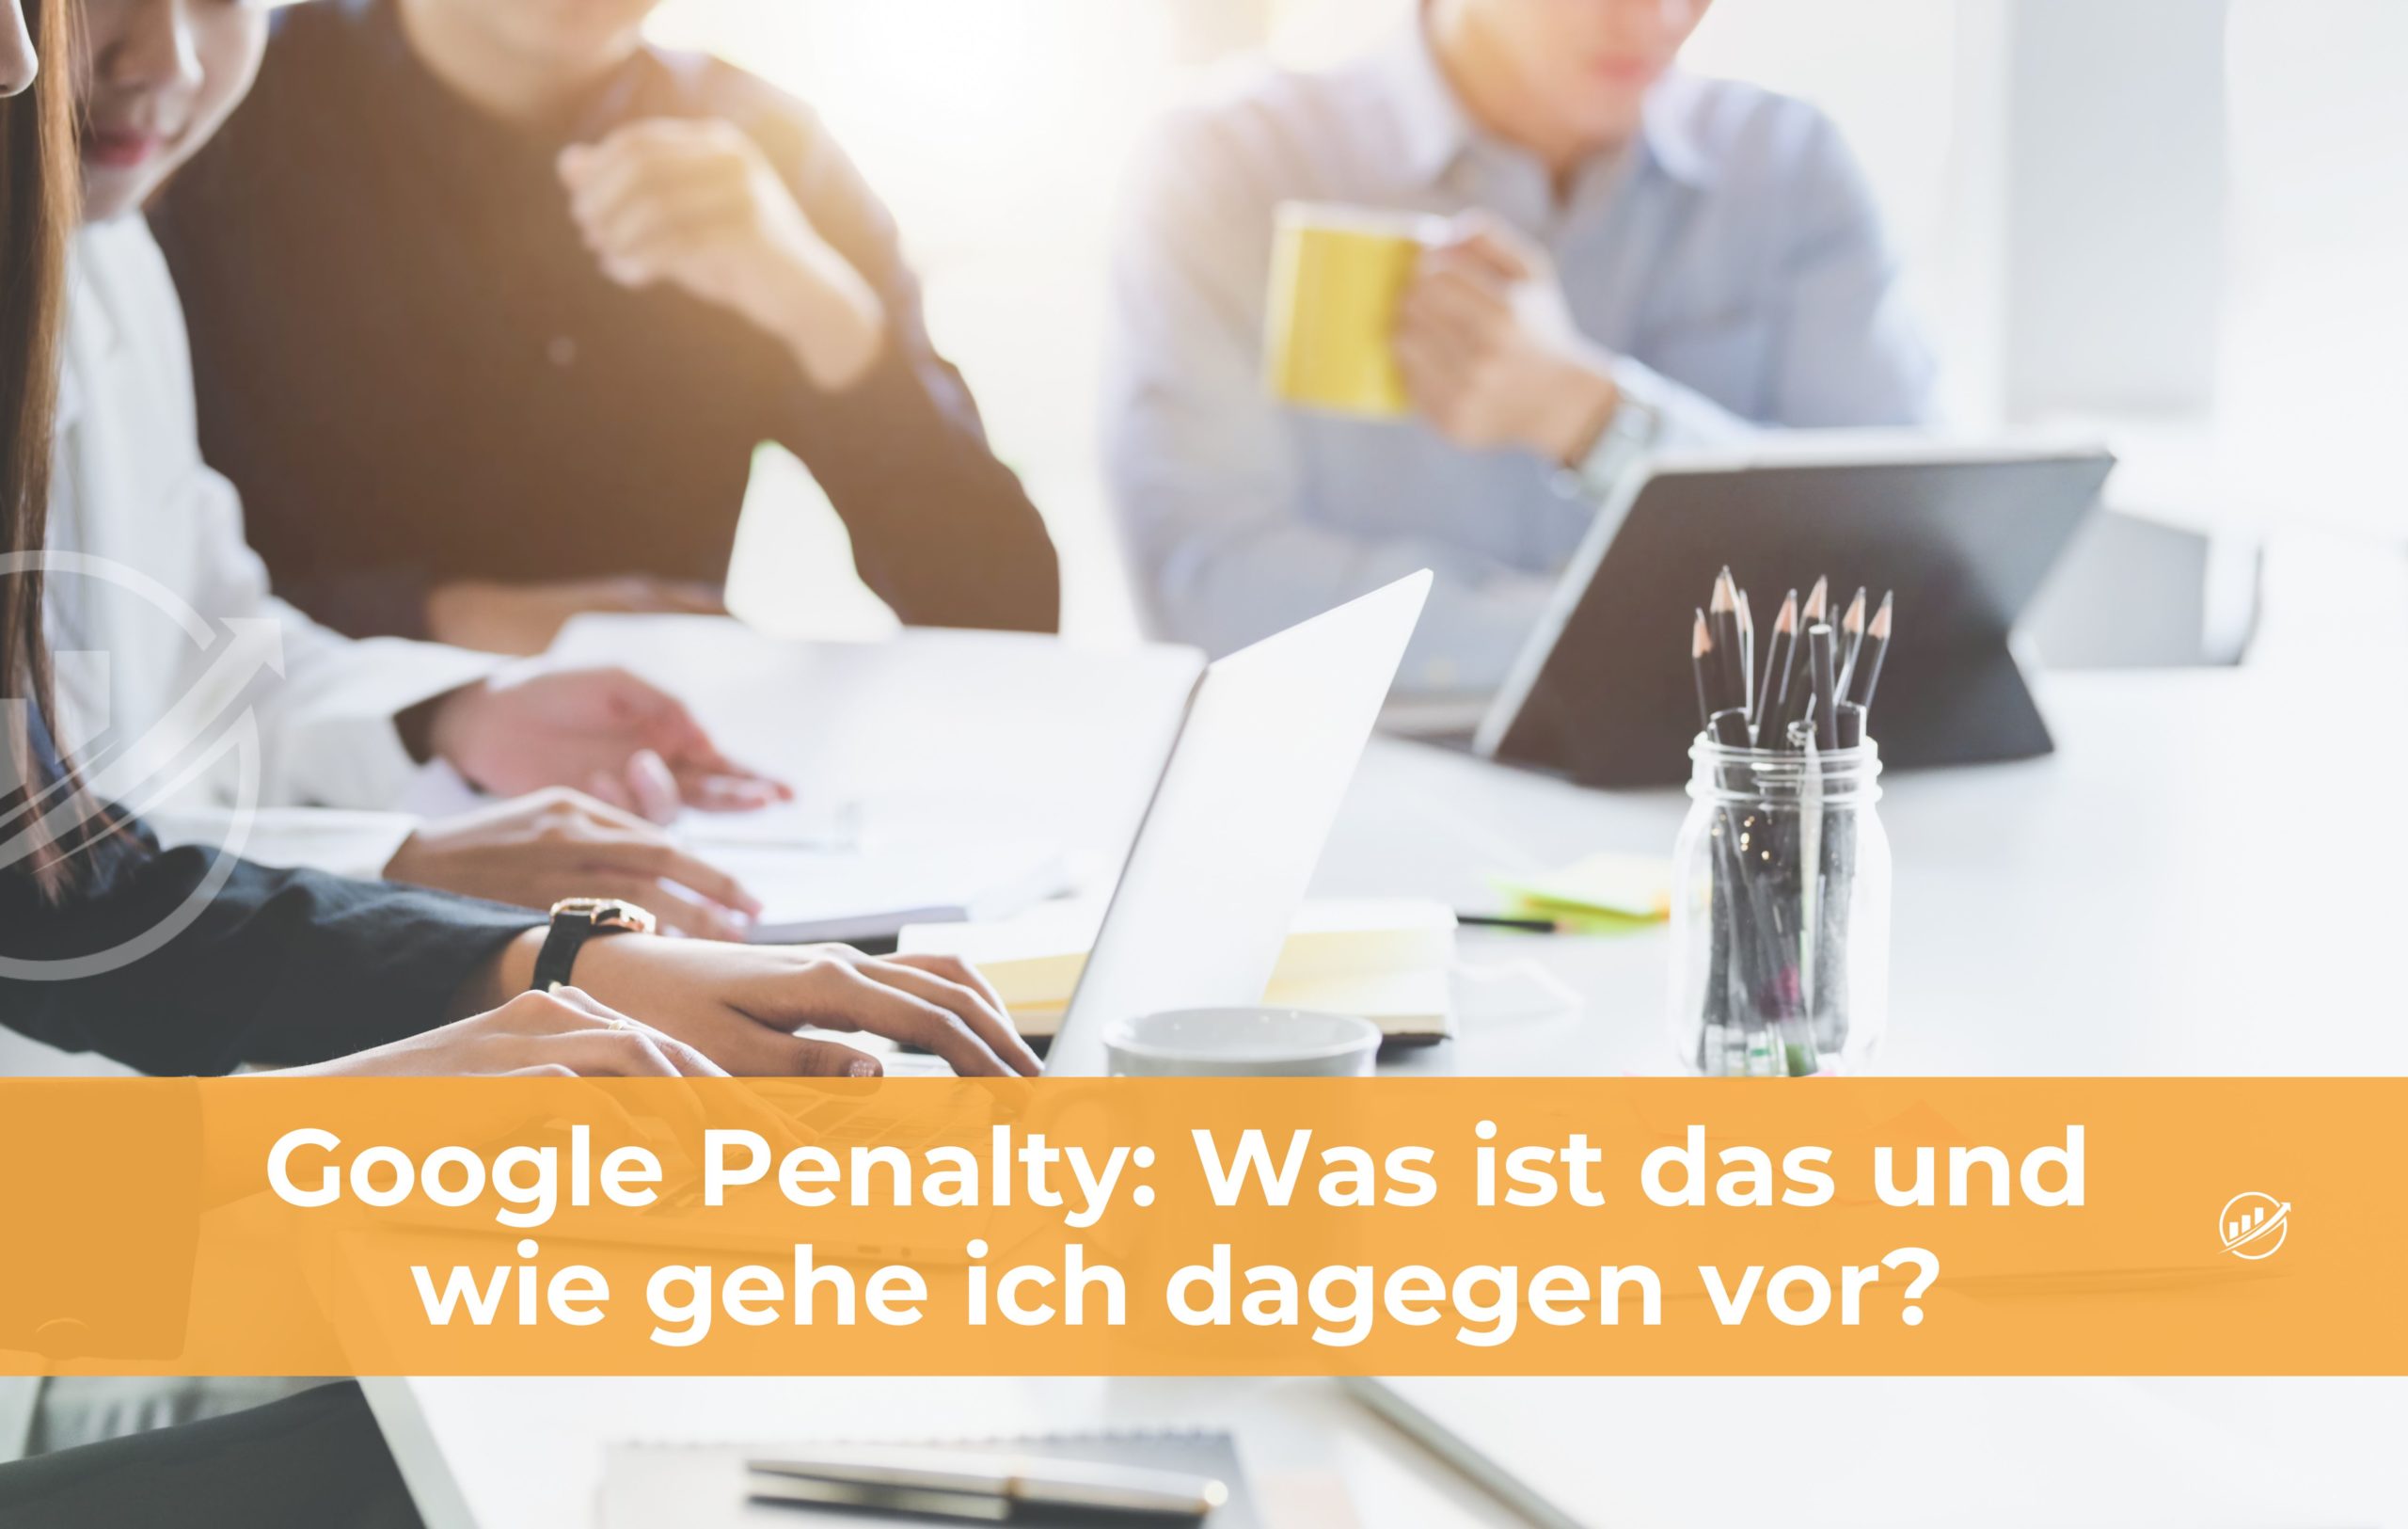 Google Penalty: Was ist das und wie gehe ich dagegen vor?